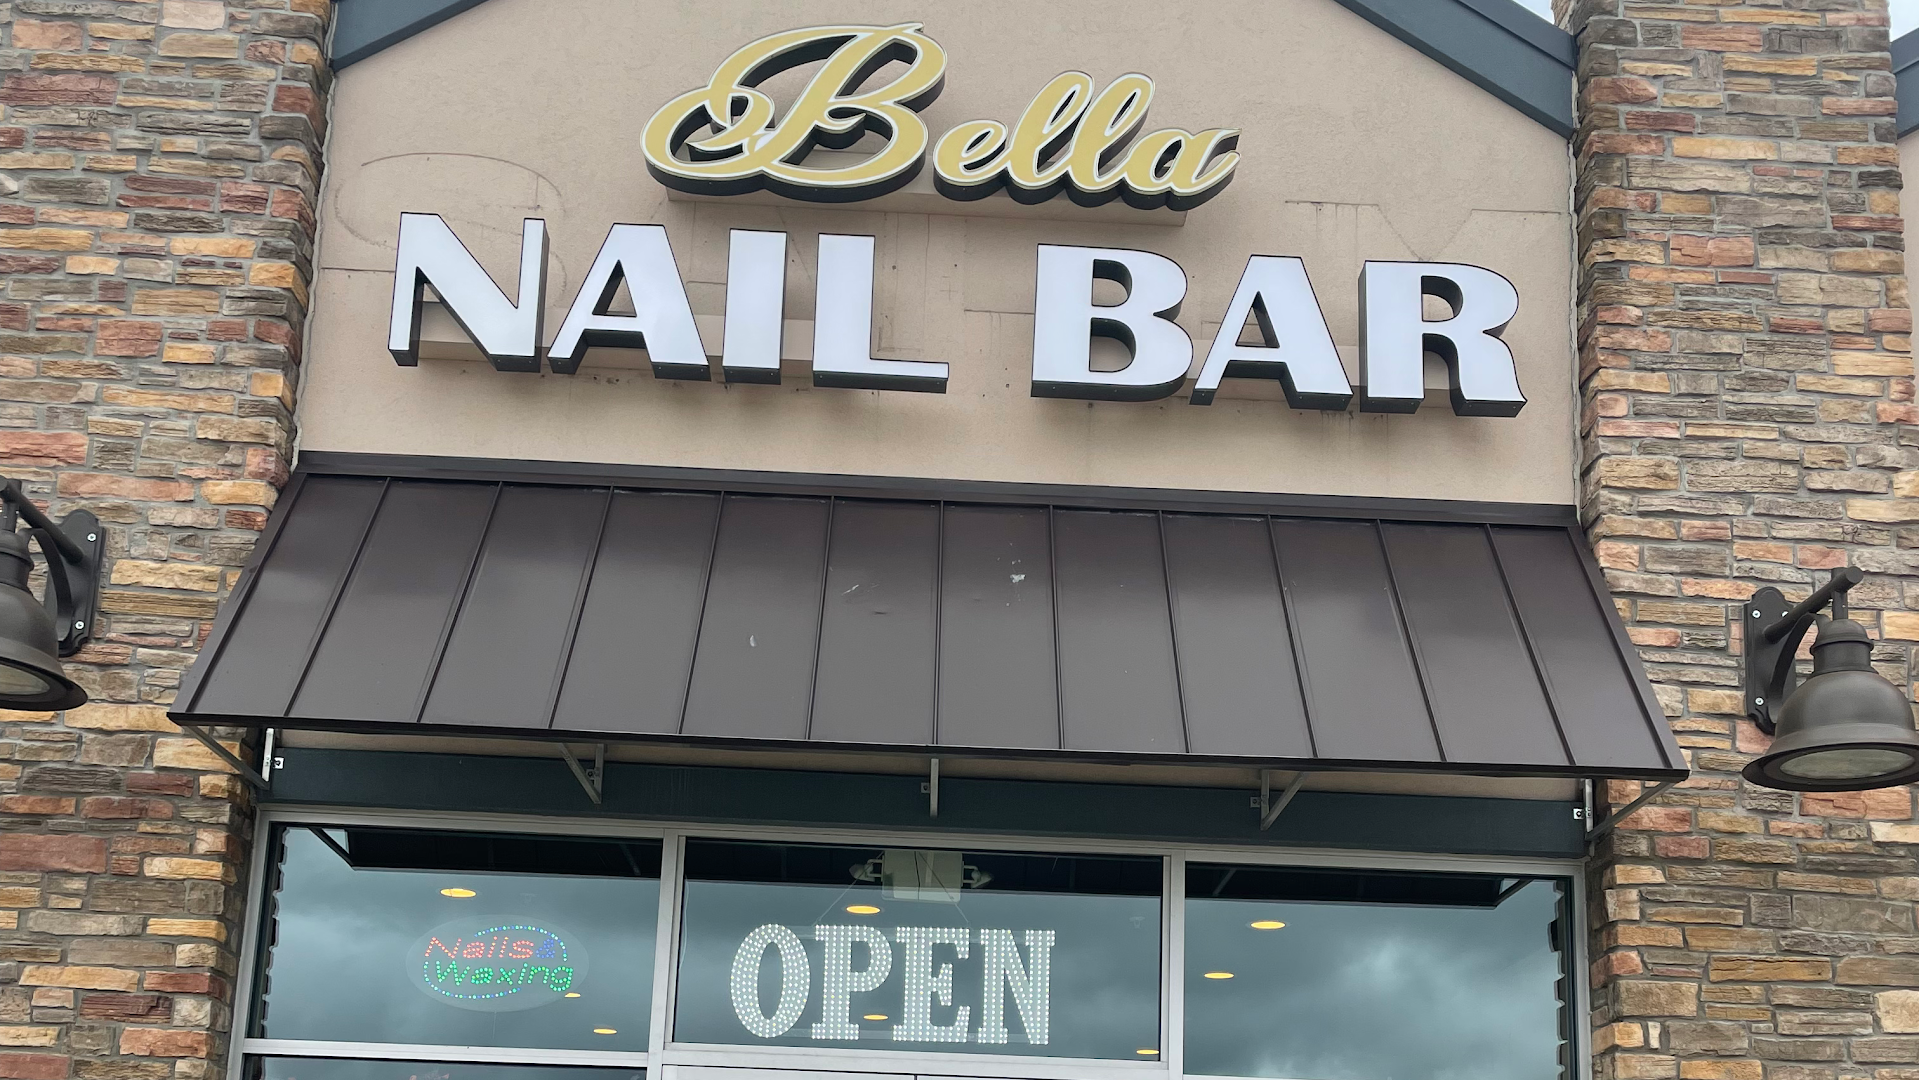 Bella Nail Bar